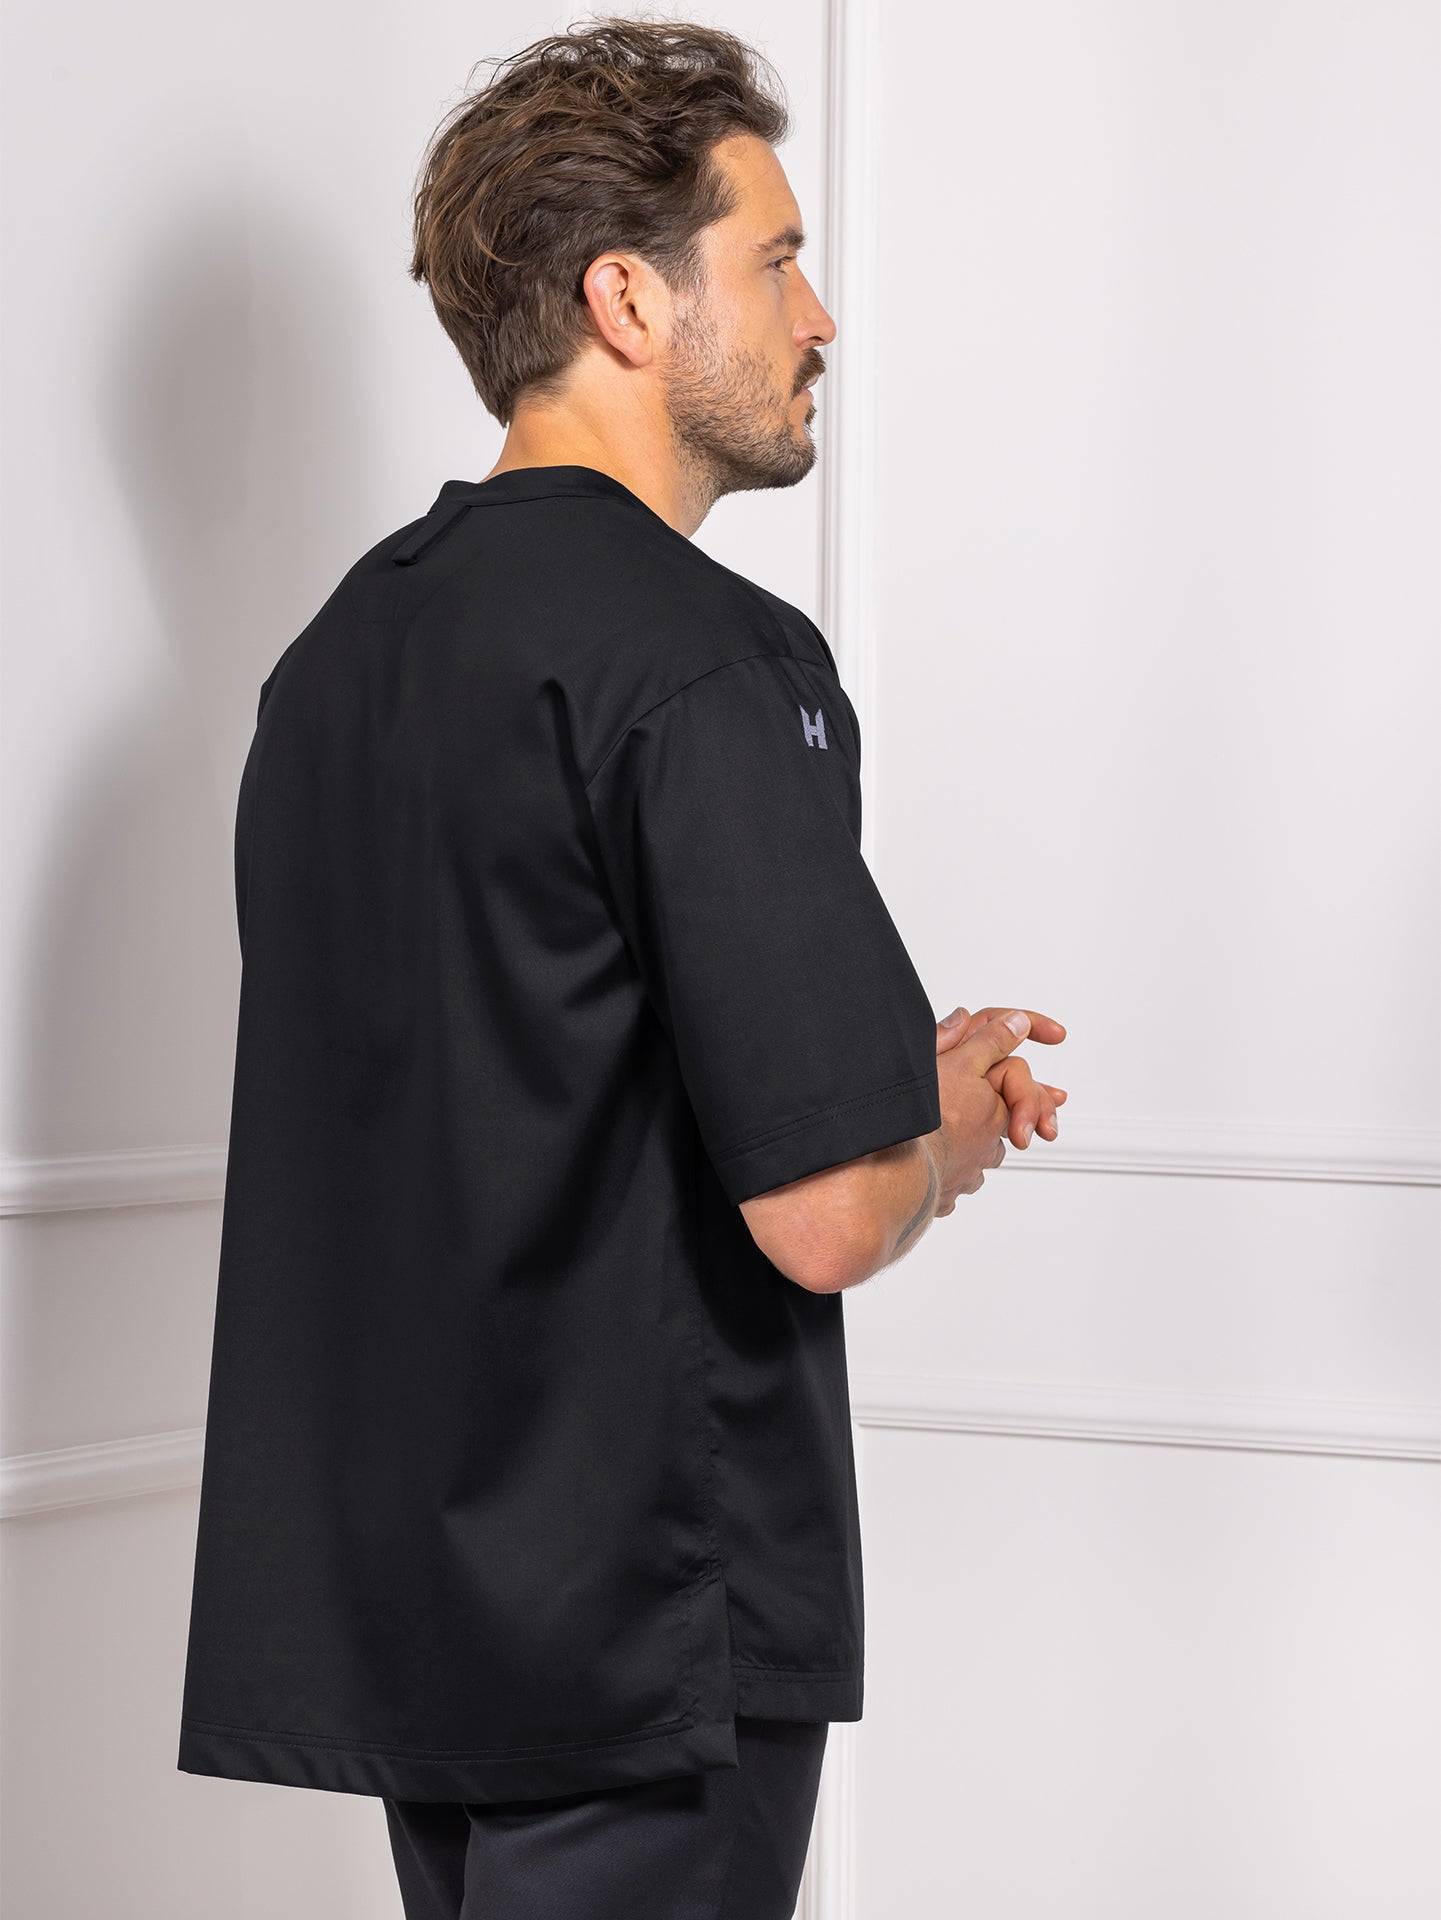 T-shirt Gorgio Black by Le Nouveau Chef -  ChefsCotton